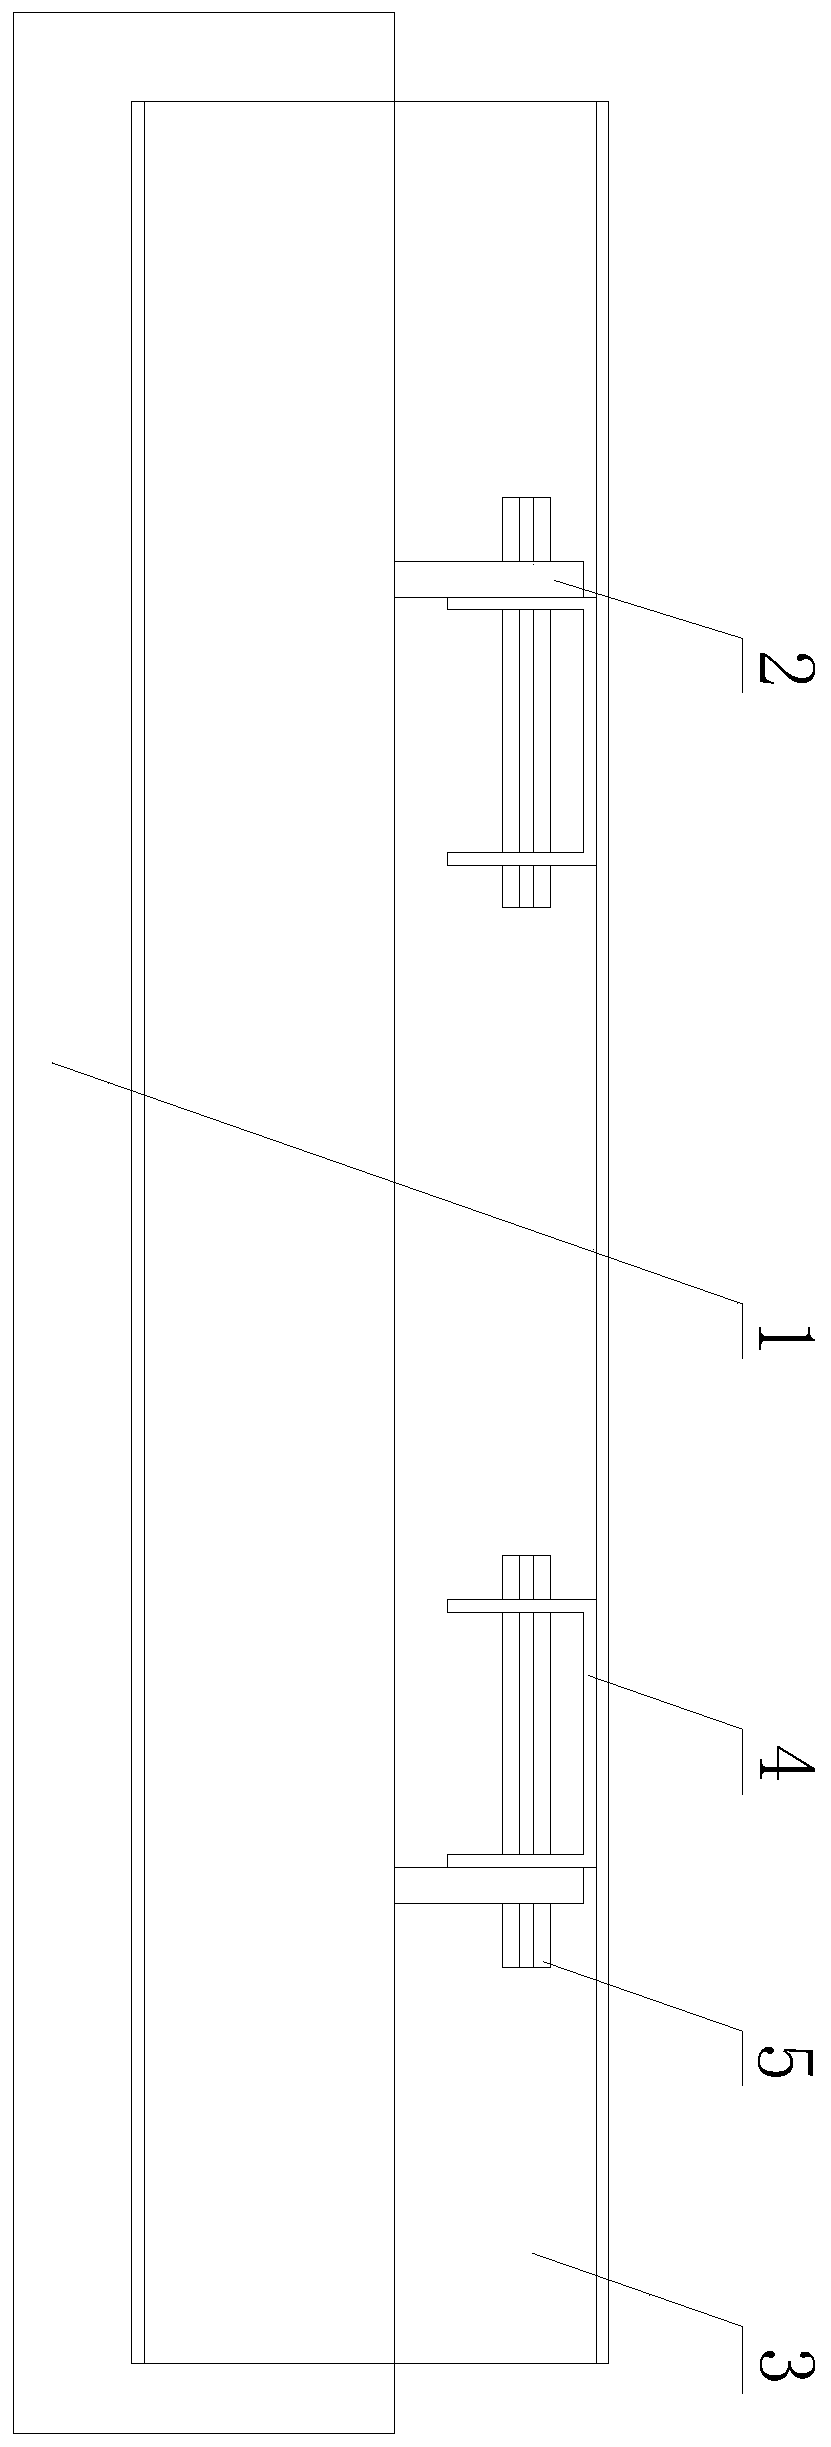 Novel door-motor mounting structure